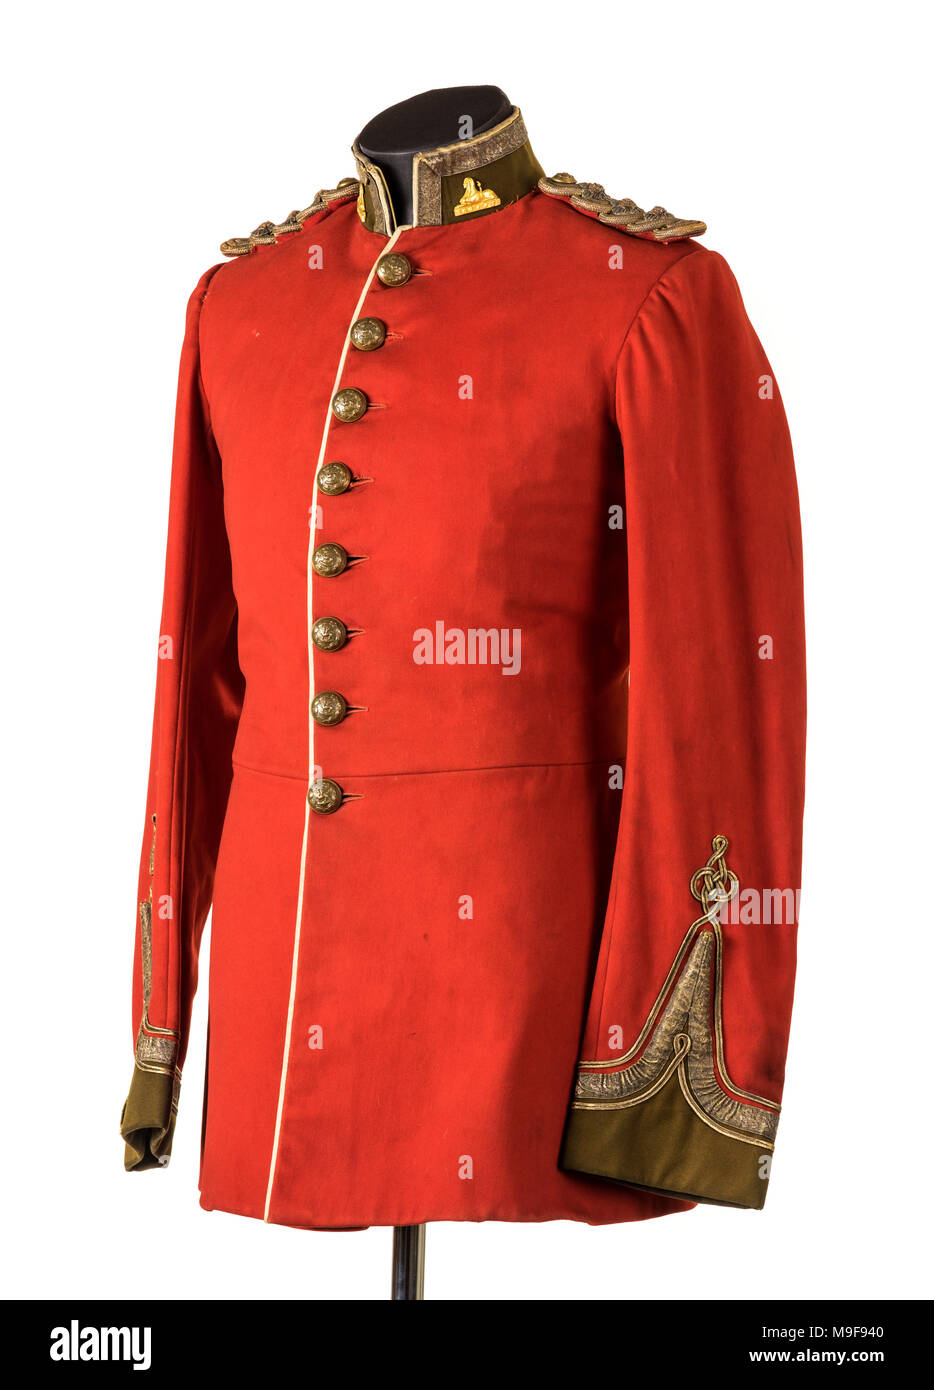 Victorian ufficiale dell'Esercito Britannico la scarlet uniforme della South Wales Borderers (xxiv reggimento di piede), utilizzato durante la guerra Zulu del 1879. Foto Stock